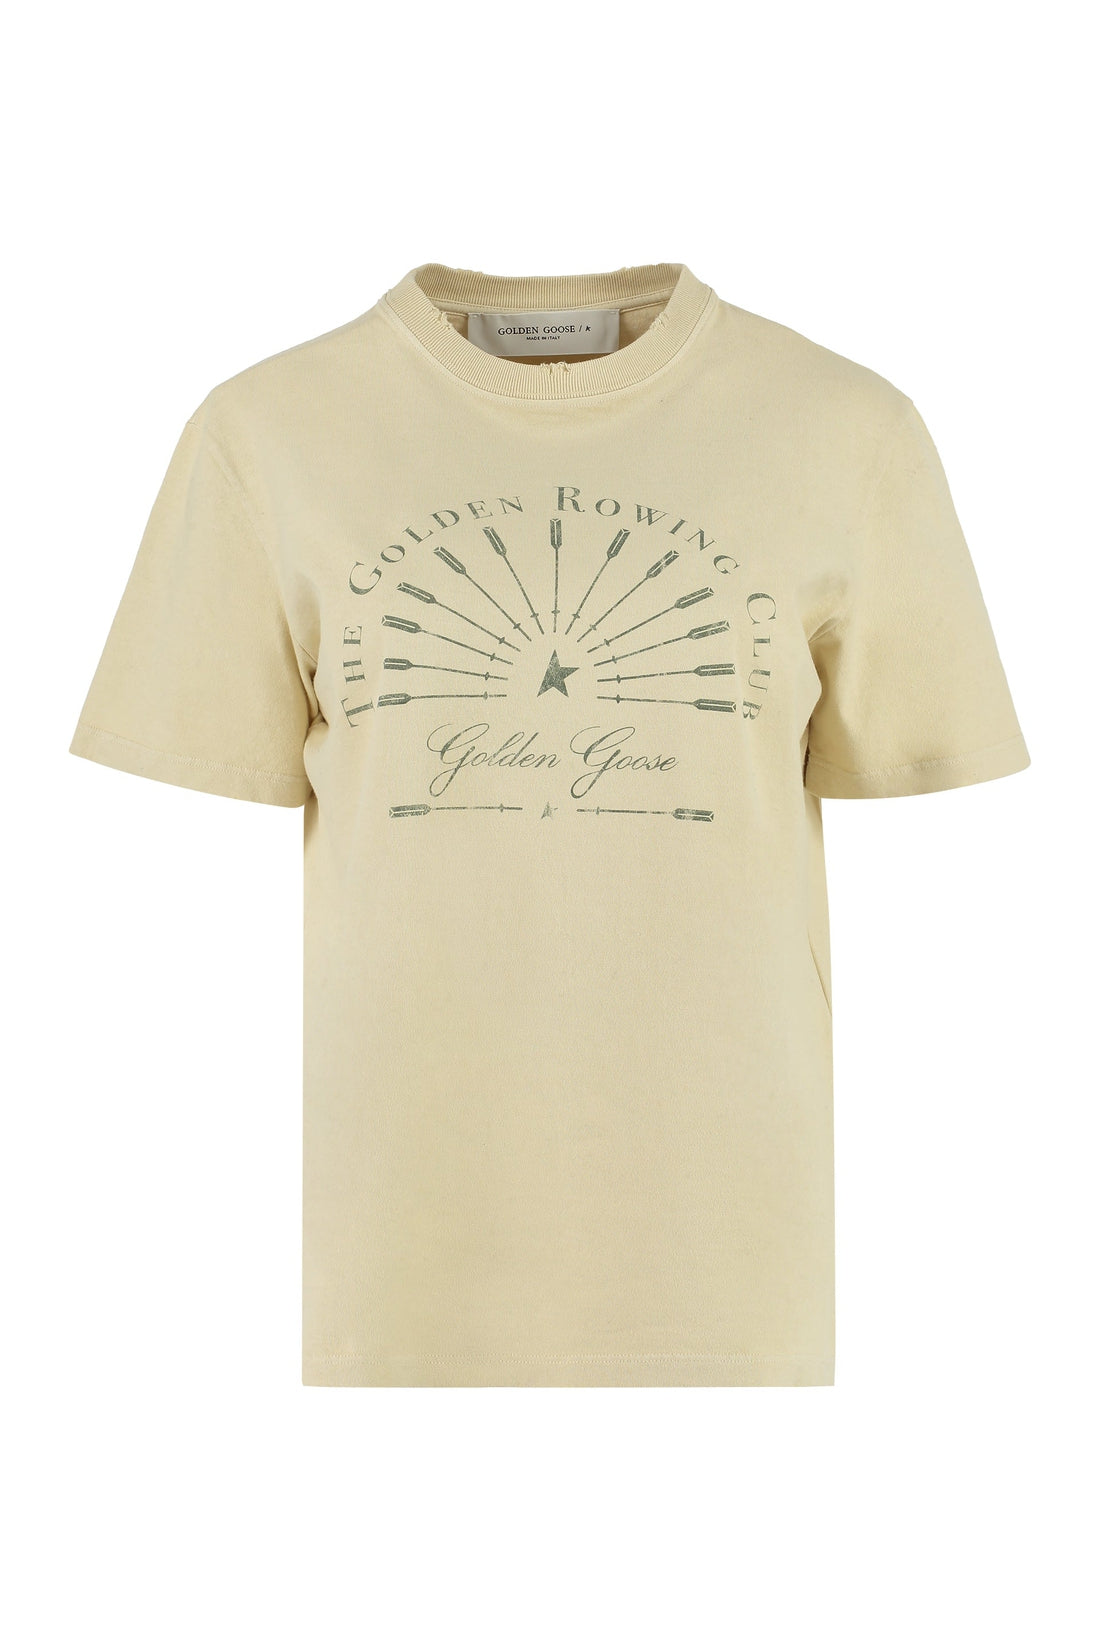 Golden Goose-OUTLET-SALE-Printed cotton T-shirt-ARCHIVIST